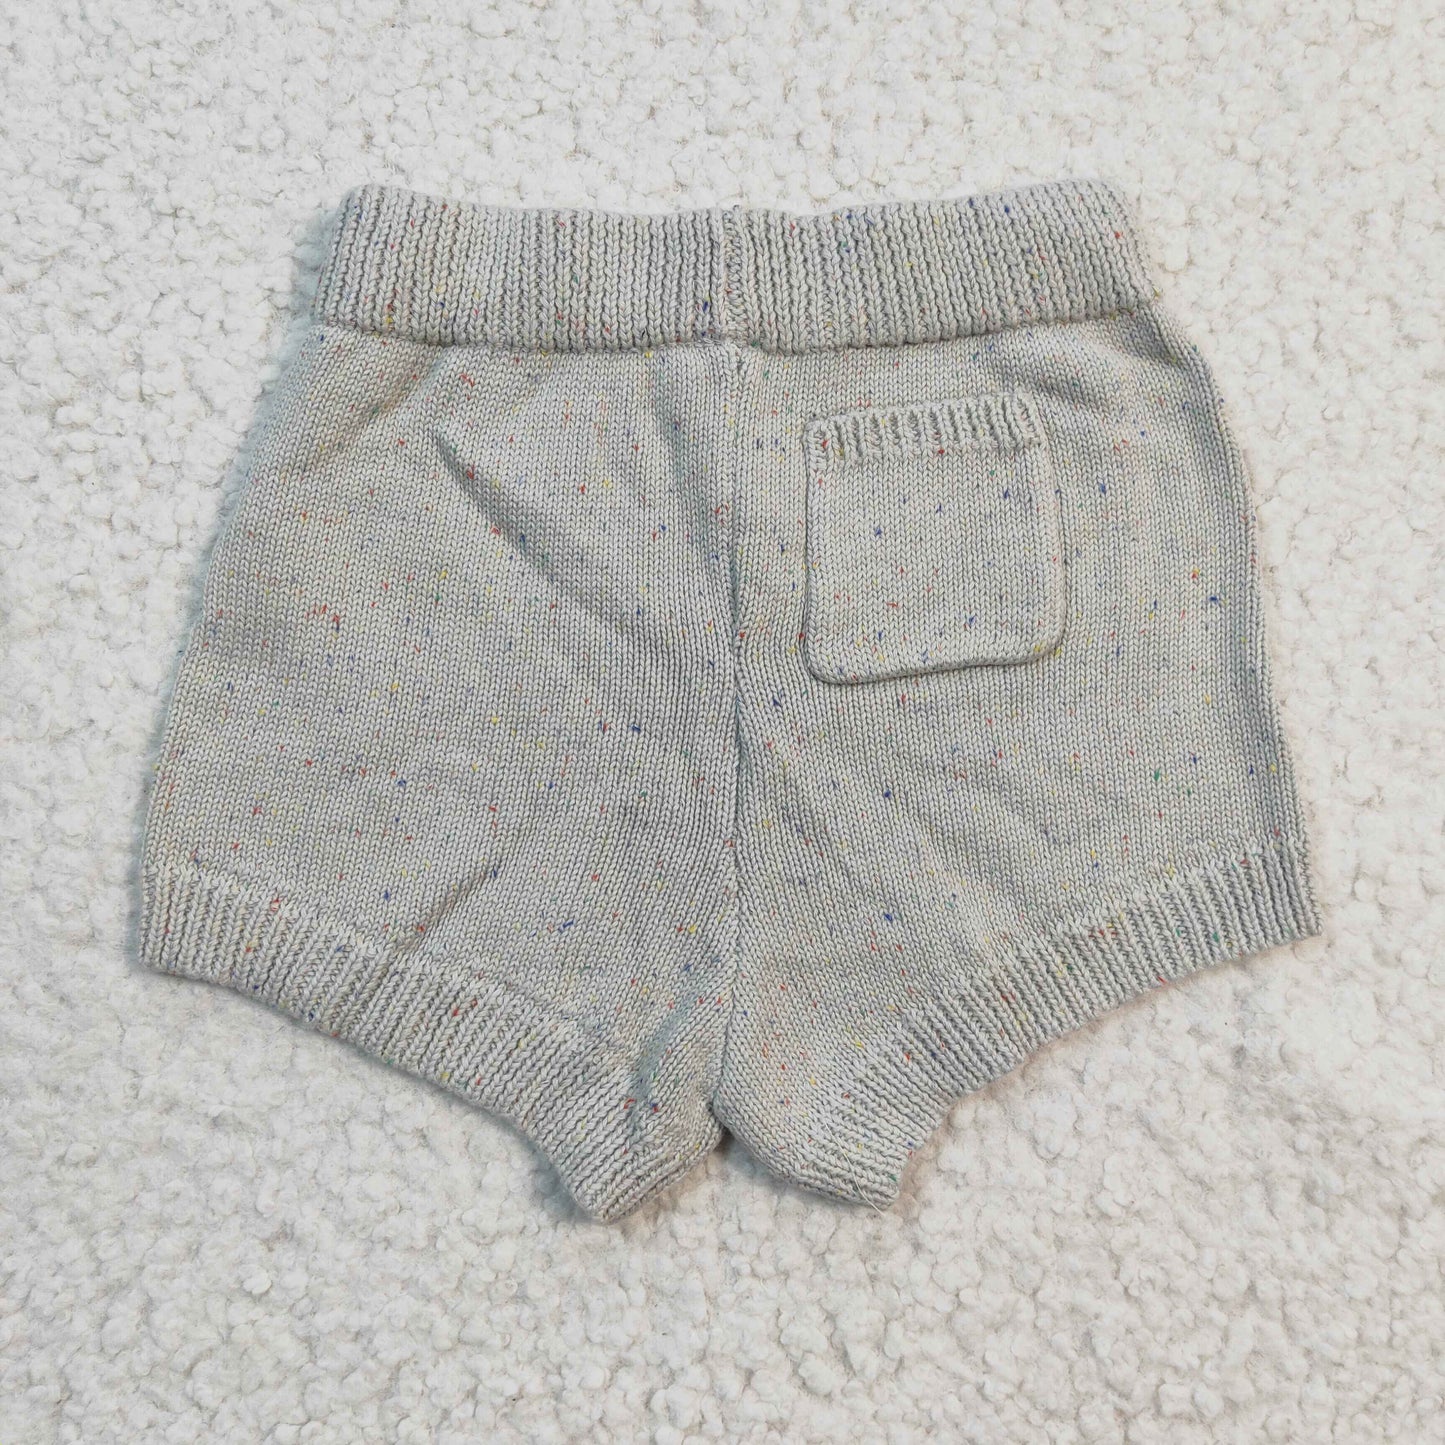 Baby Girls Woolen Sweater Shorts SS0036